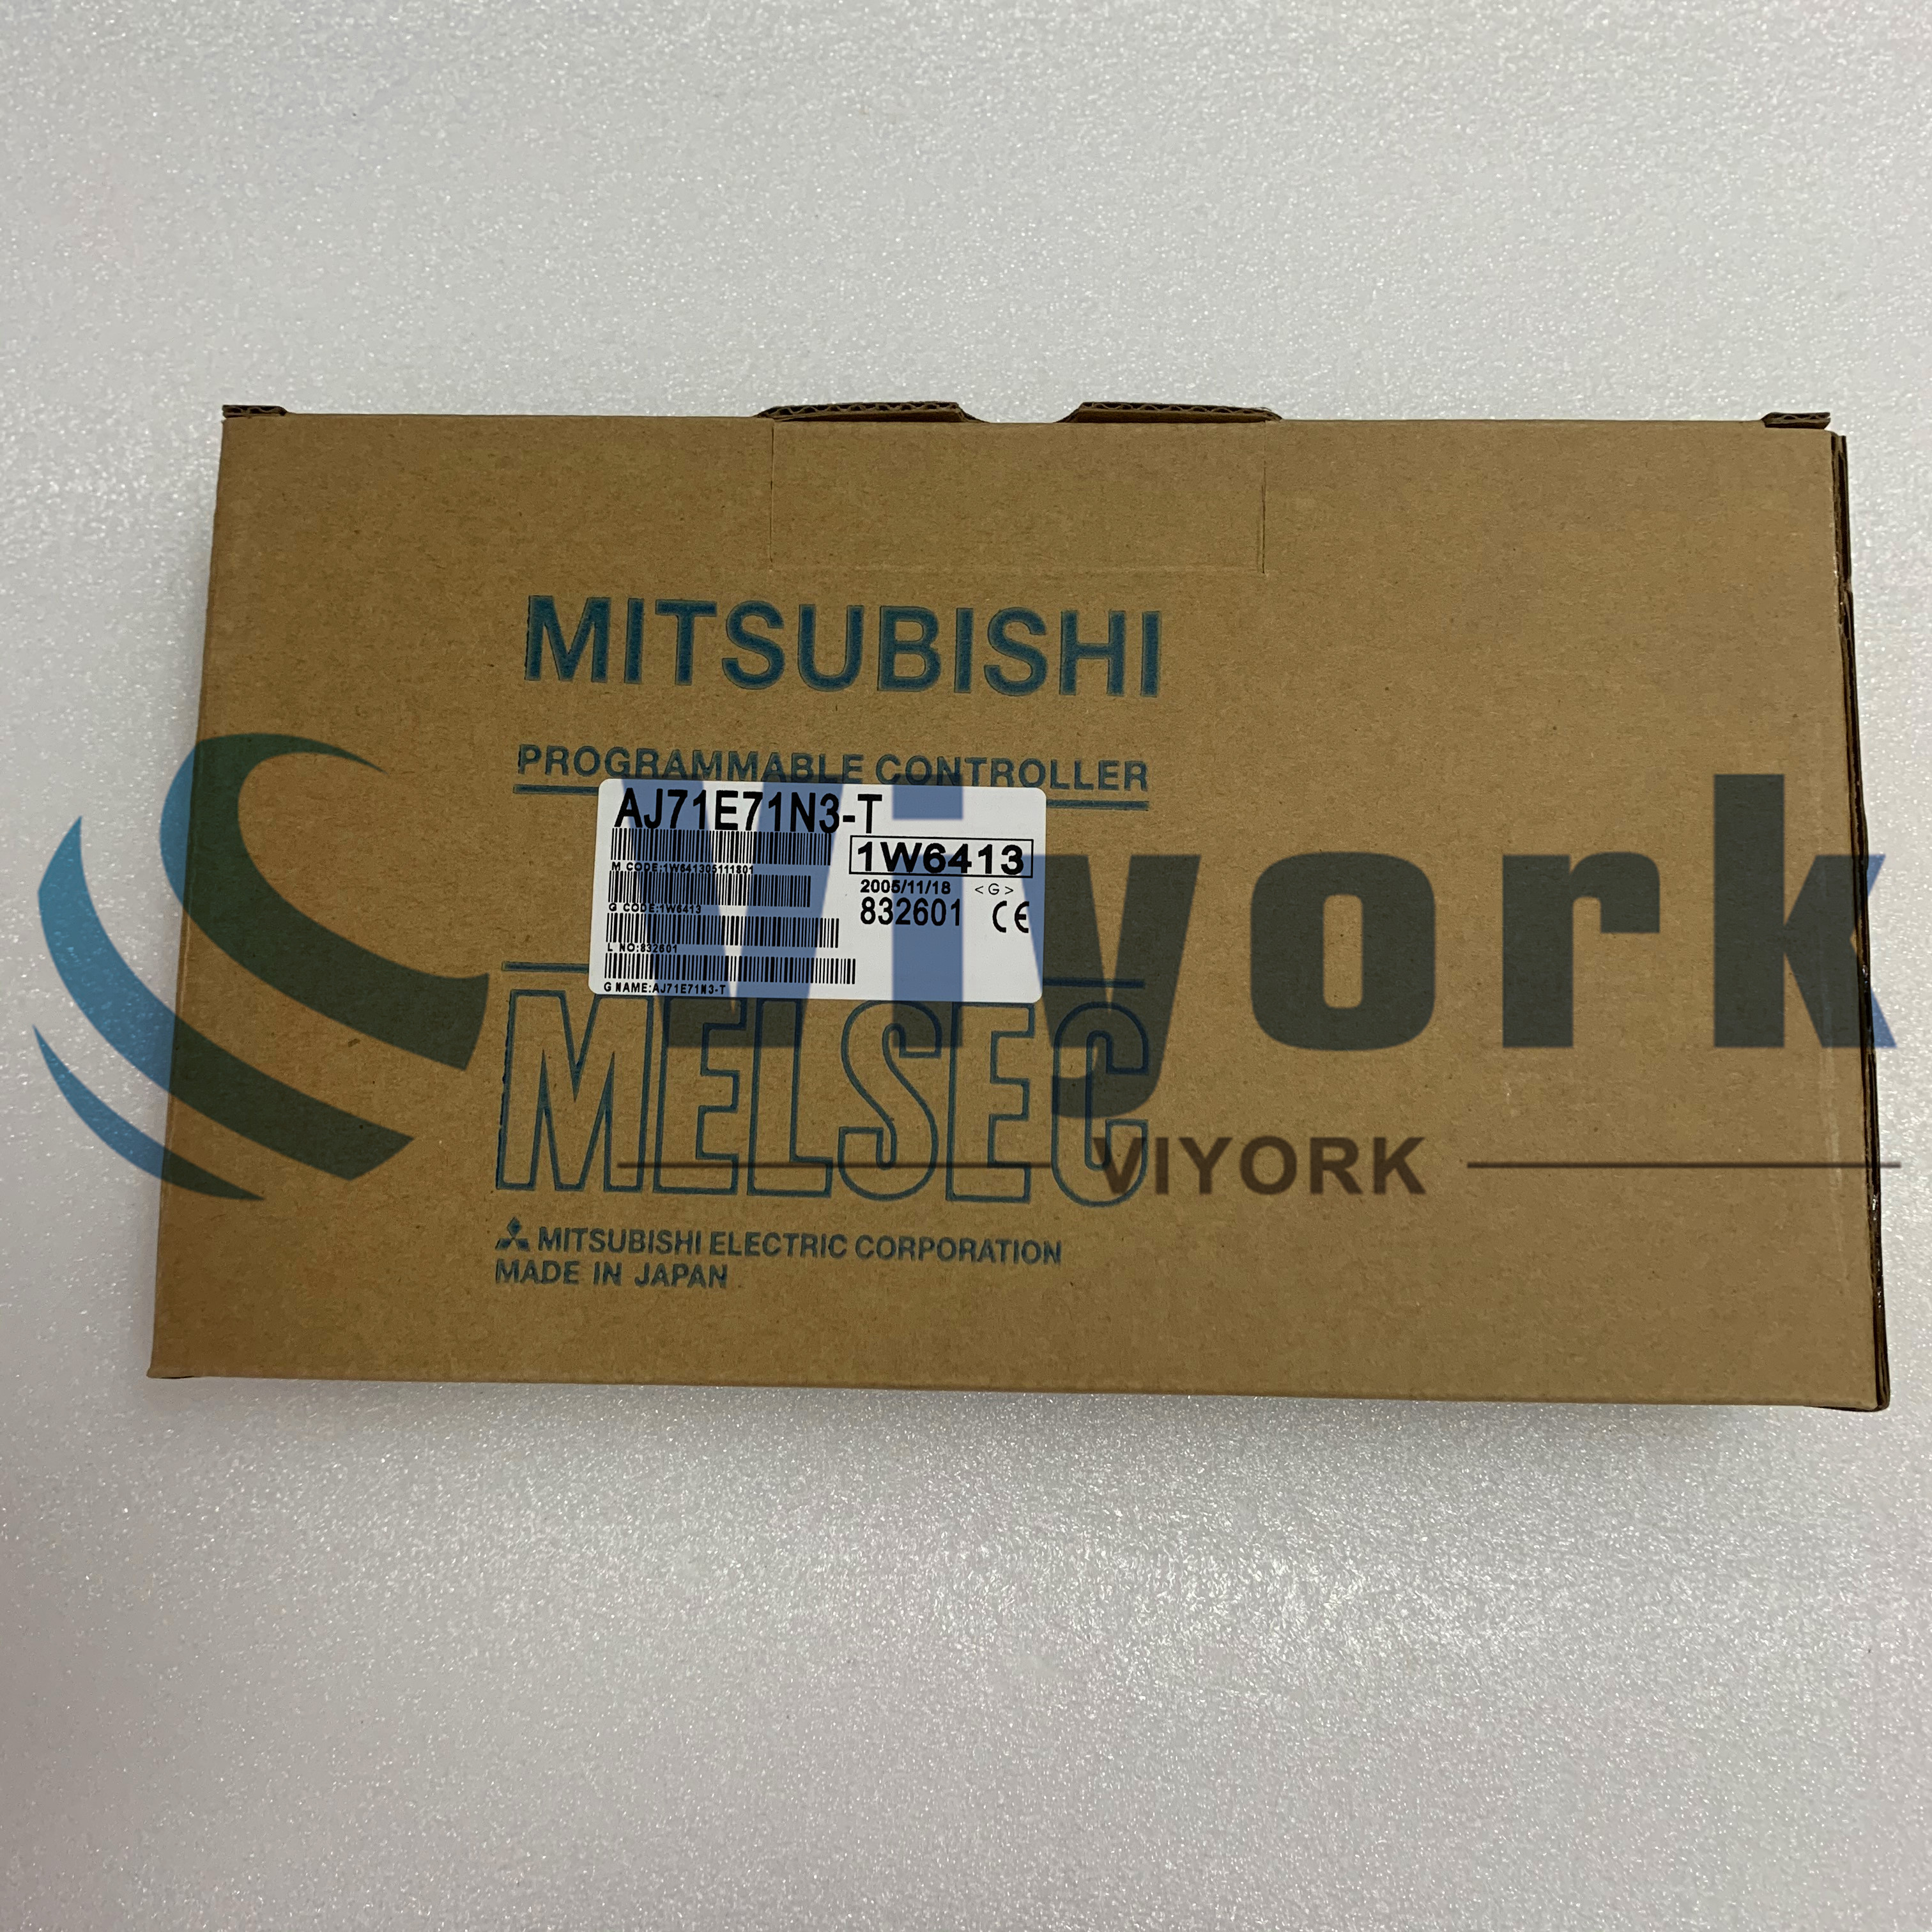 Mitsubishi AJ71E71N3-T ETHERNET MODULE 10BASE-T ETHERNET NEW